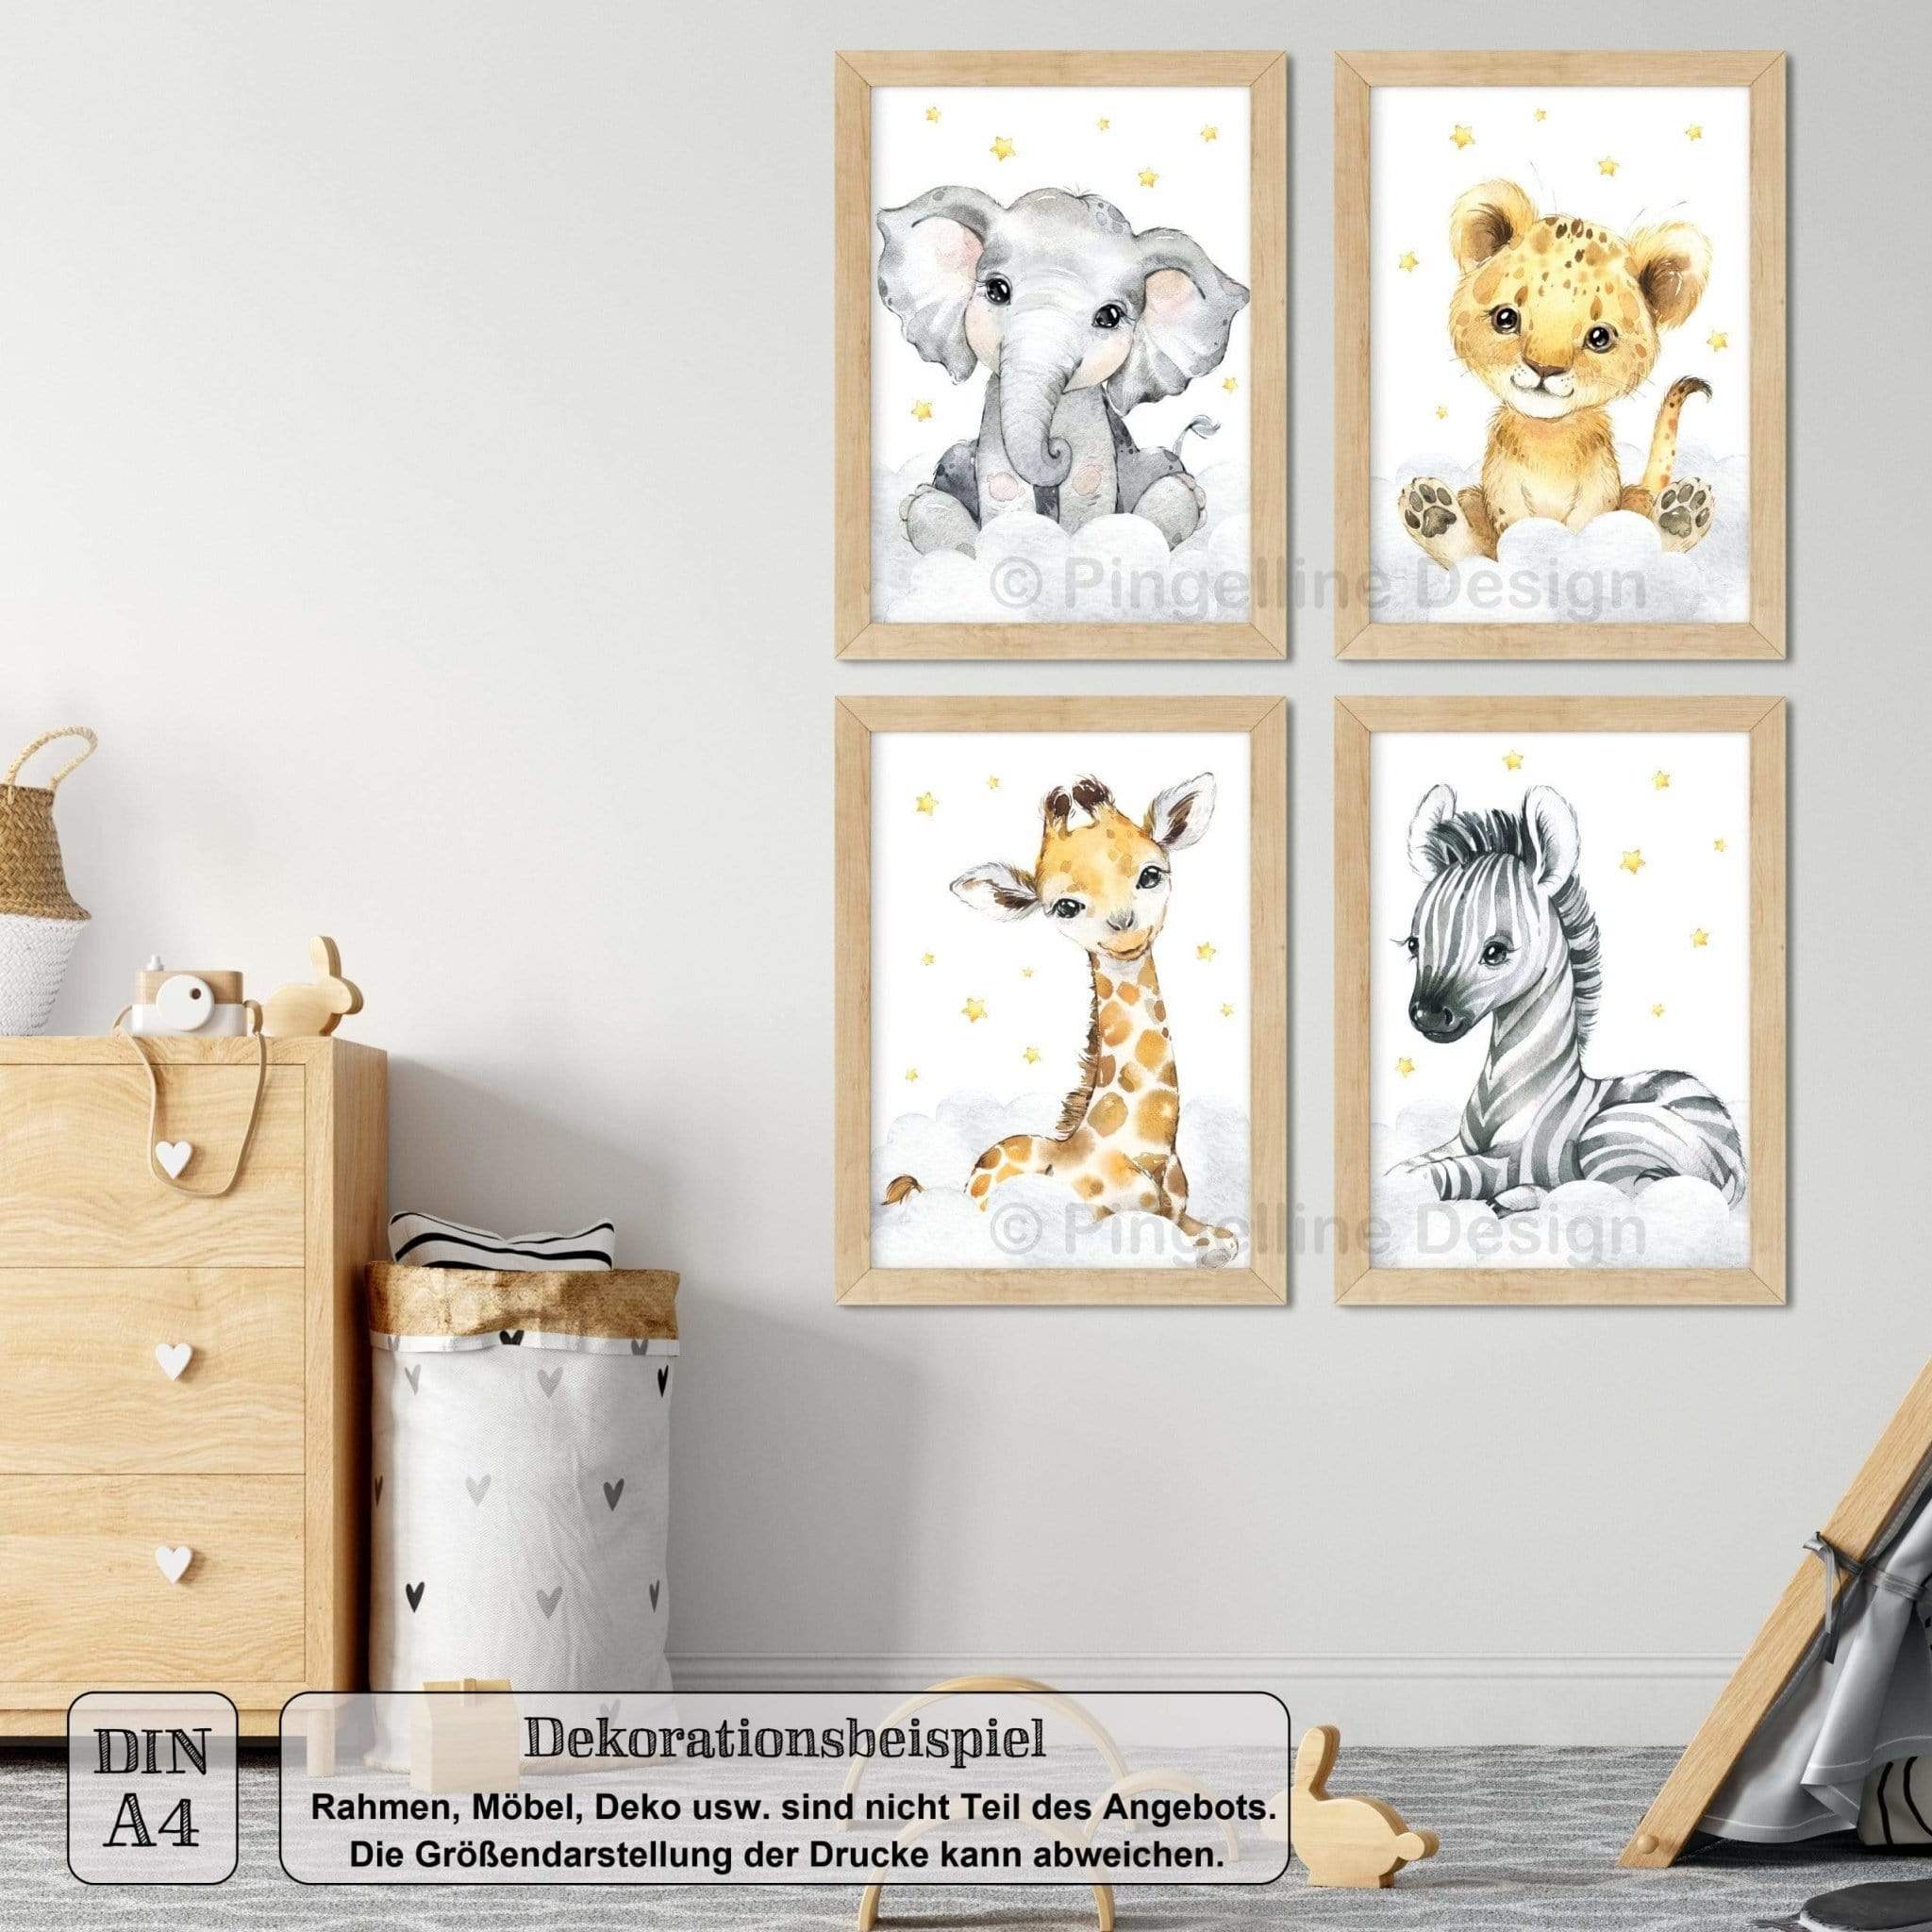 / Set - 4er Bilder Design A4 Kinderzimmer A3 Safari Tiere Pingelline